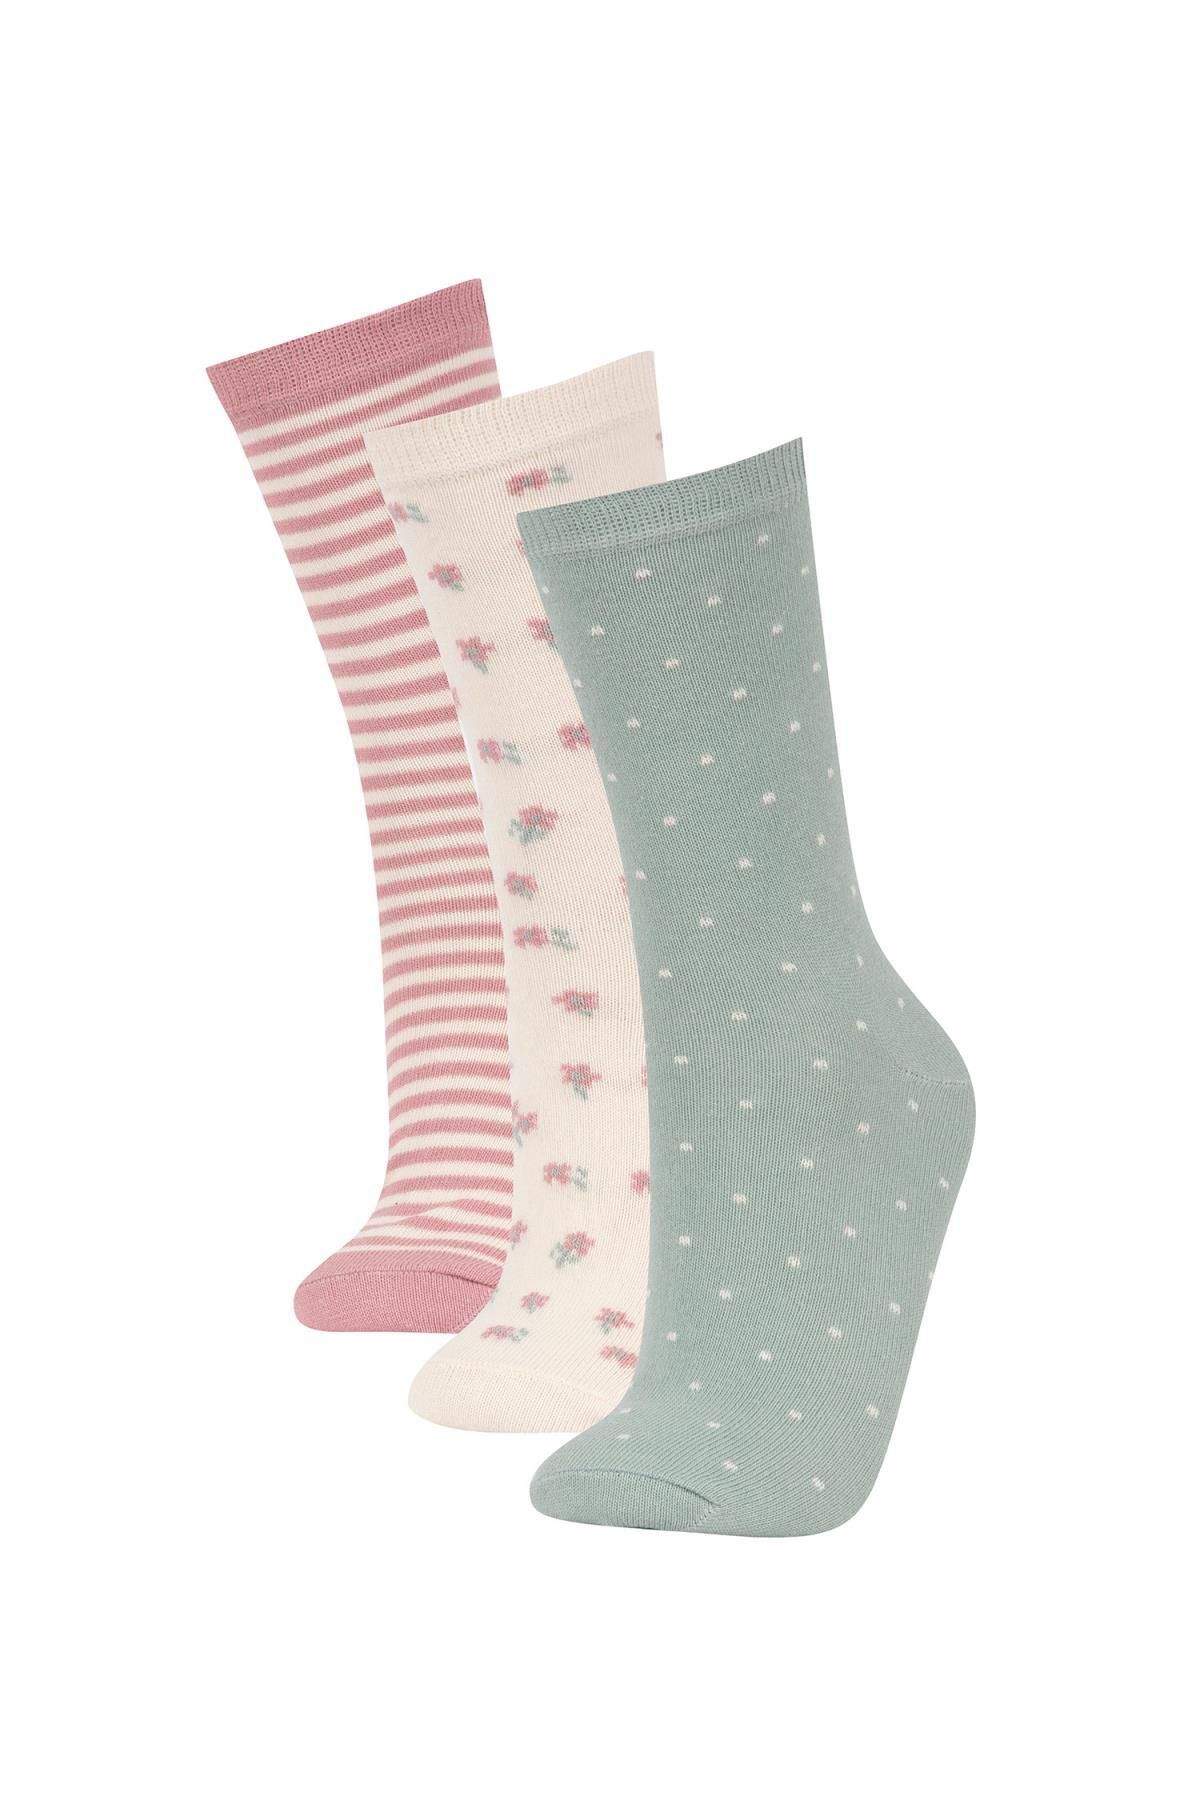 Defacto Kadın Çiçek Desenli 3'lü Pamuklu Uzun Çorap